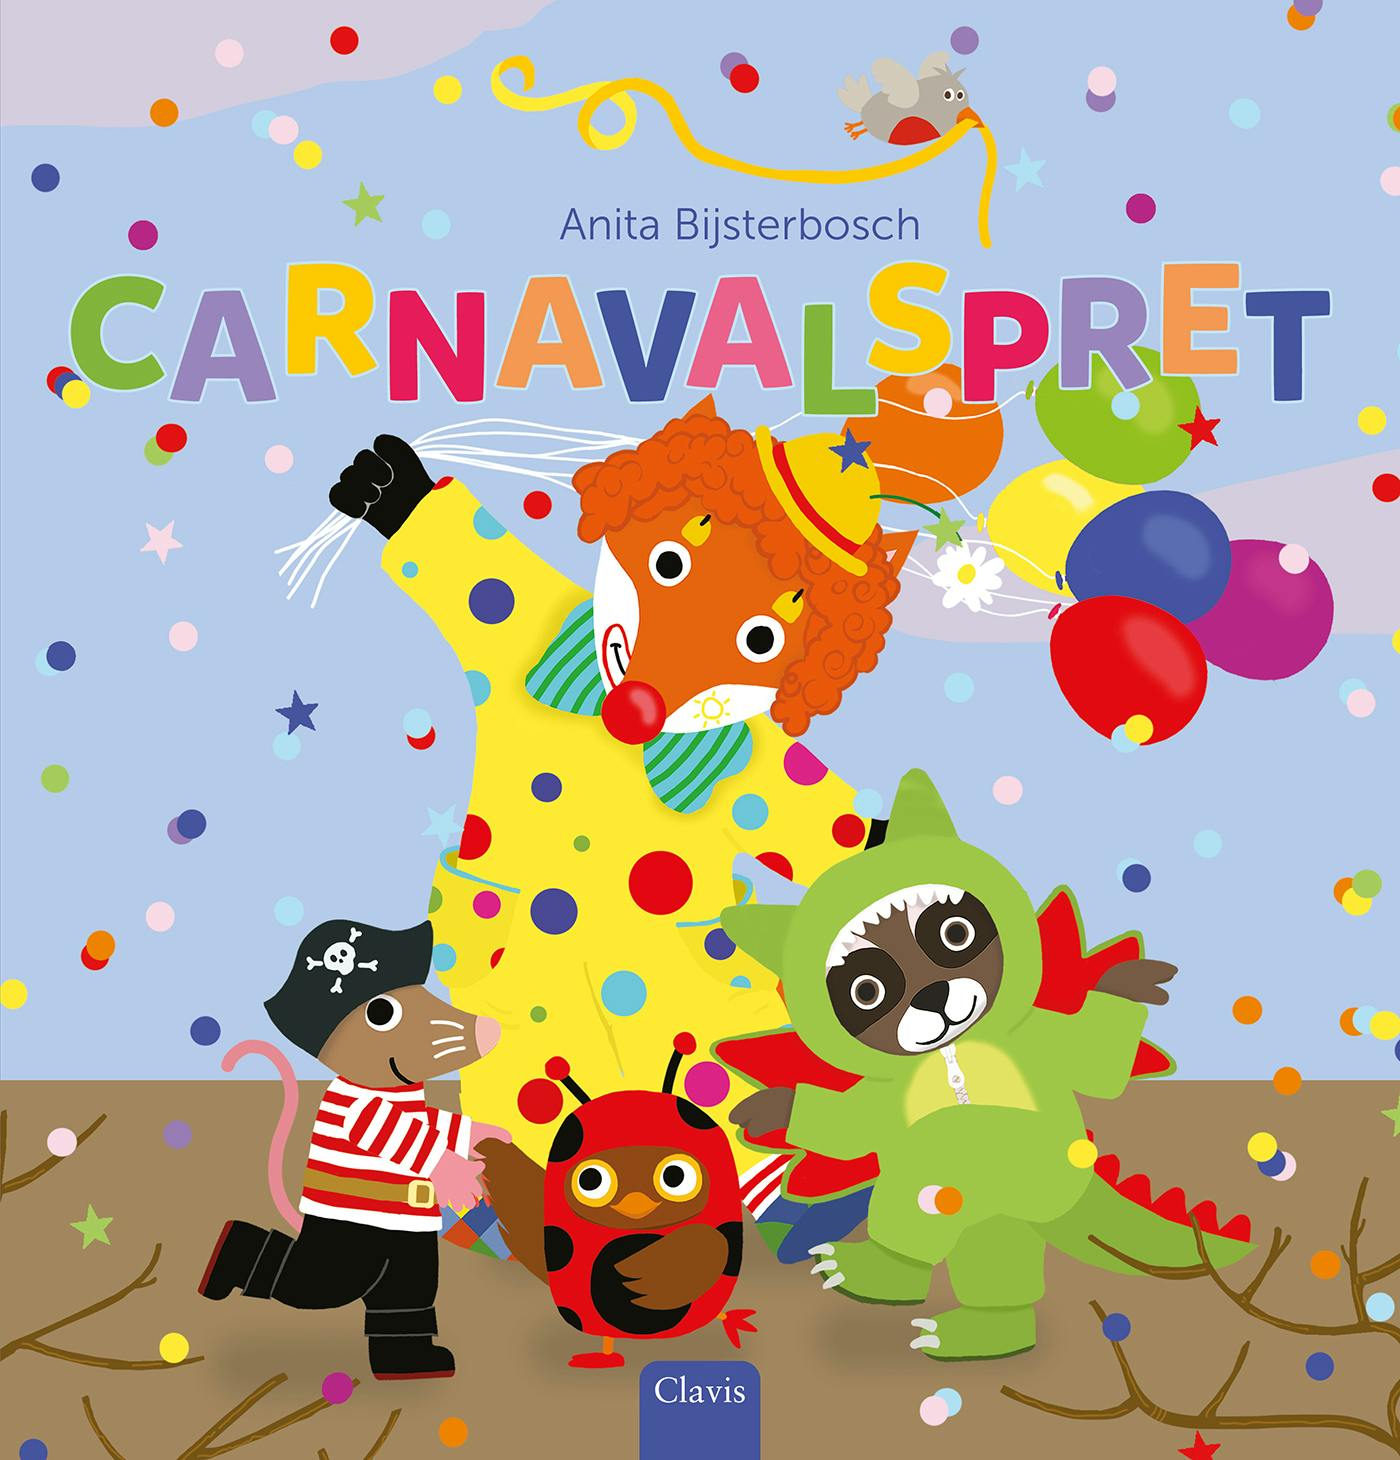 Coverbeeld van Carnavalspret 

ISBN 9789044853971
Titel Carnavalspret
Auteur Anita Bijsterbosch
Illustrator Anita Bijsterbosch